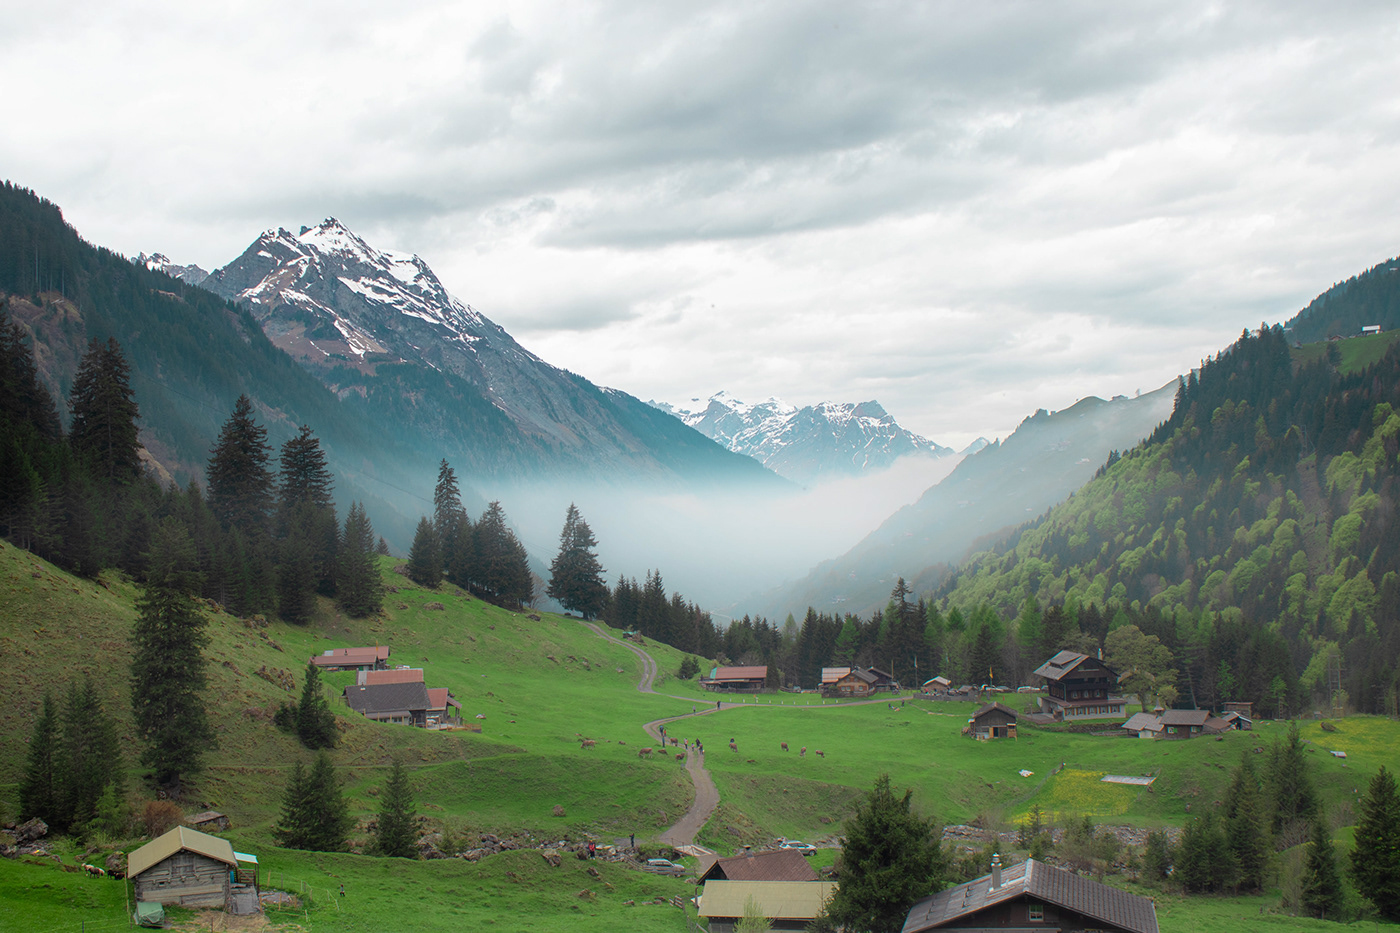 Schweiz Switzerland Nature Landscape Travel mountains